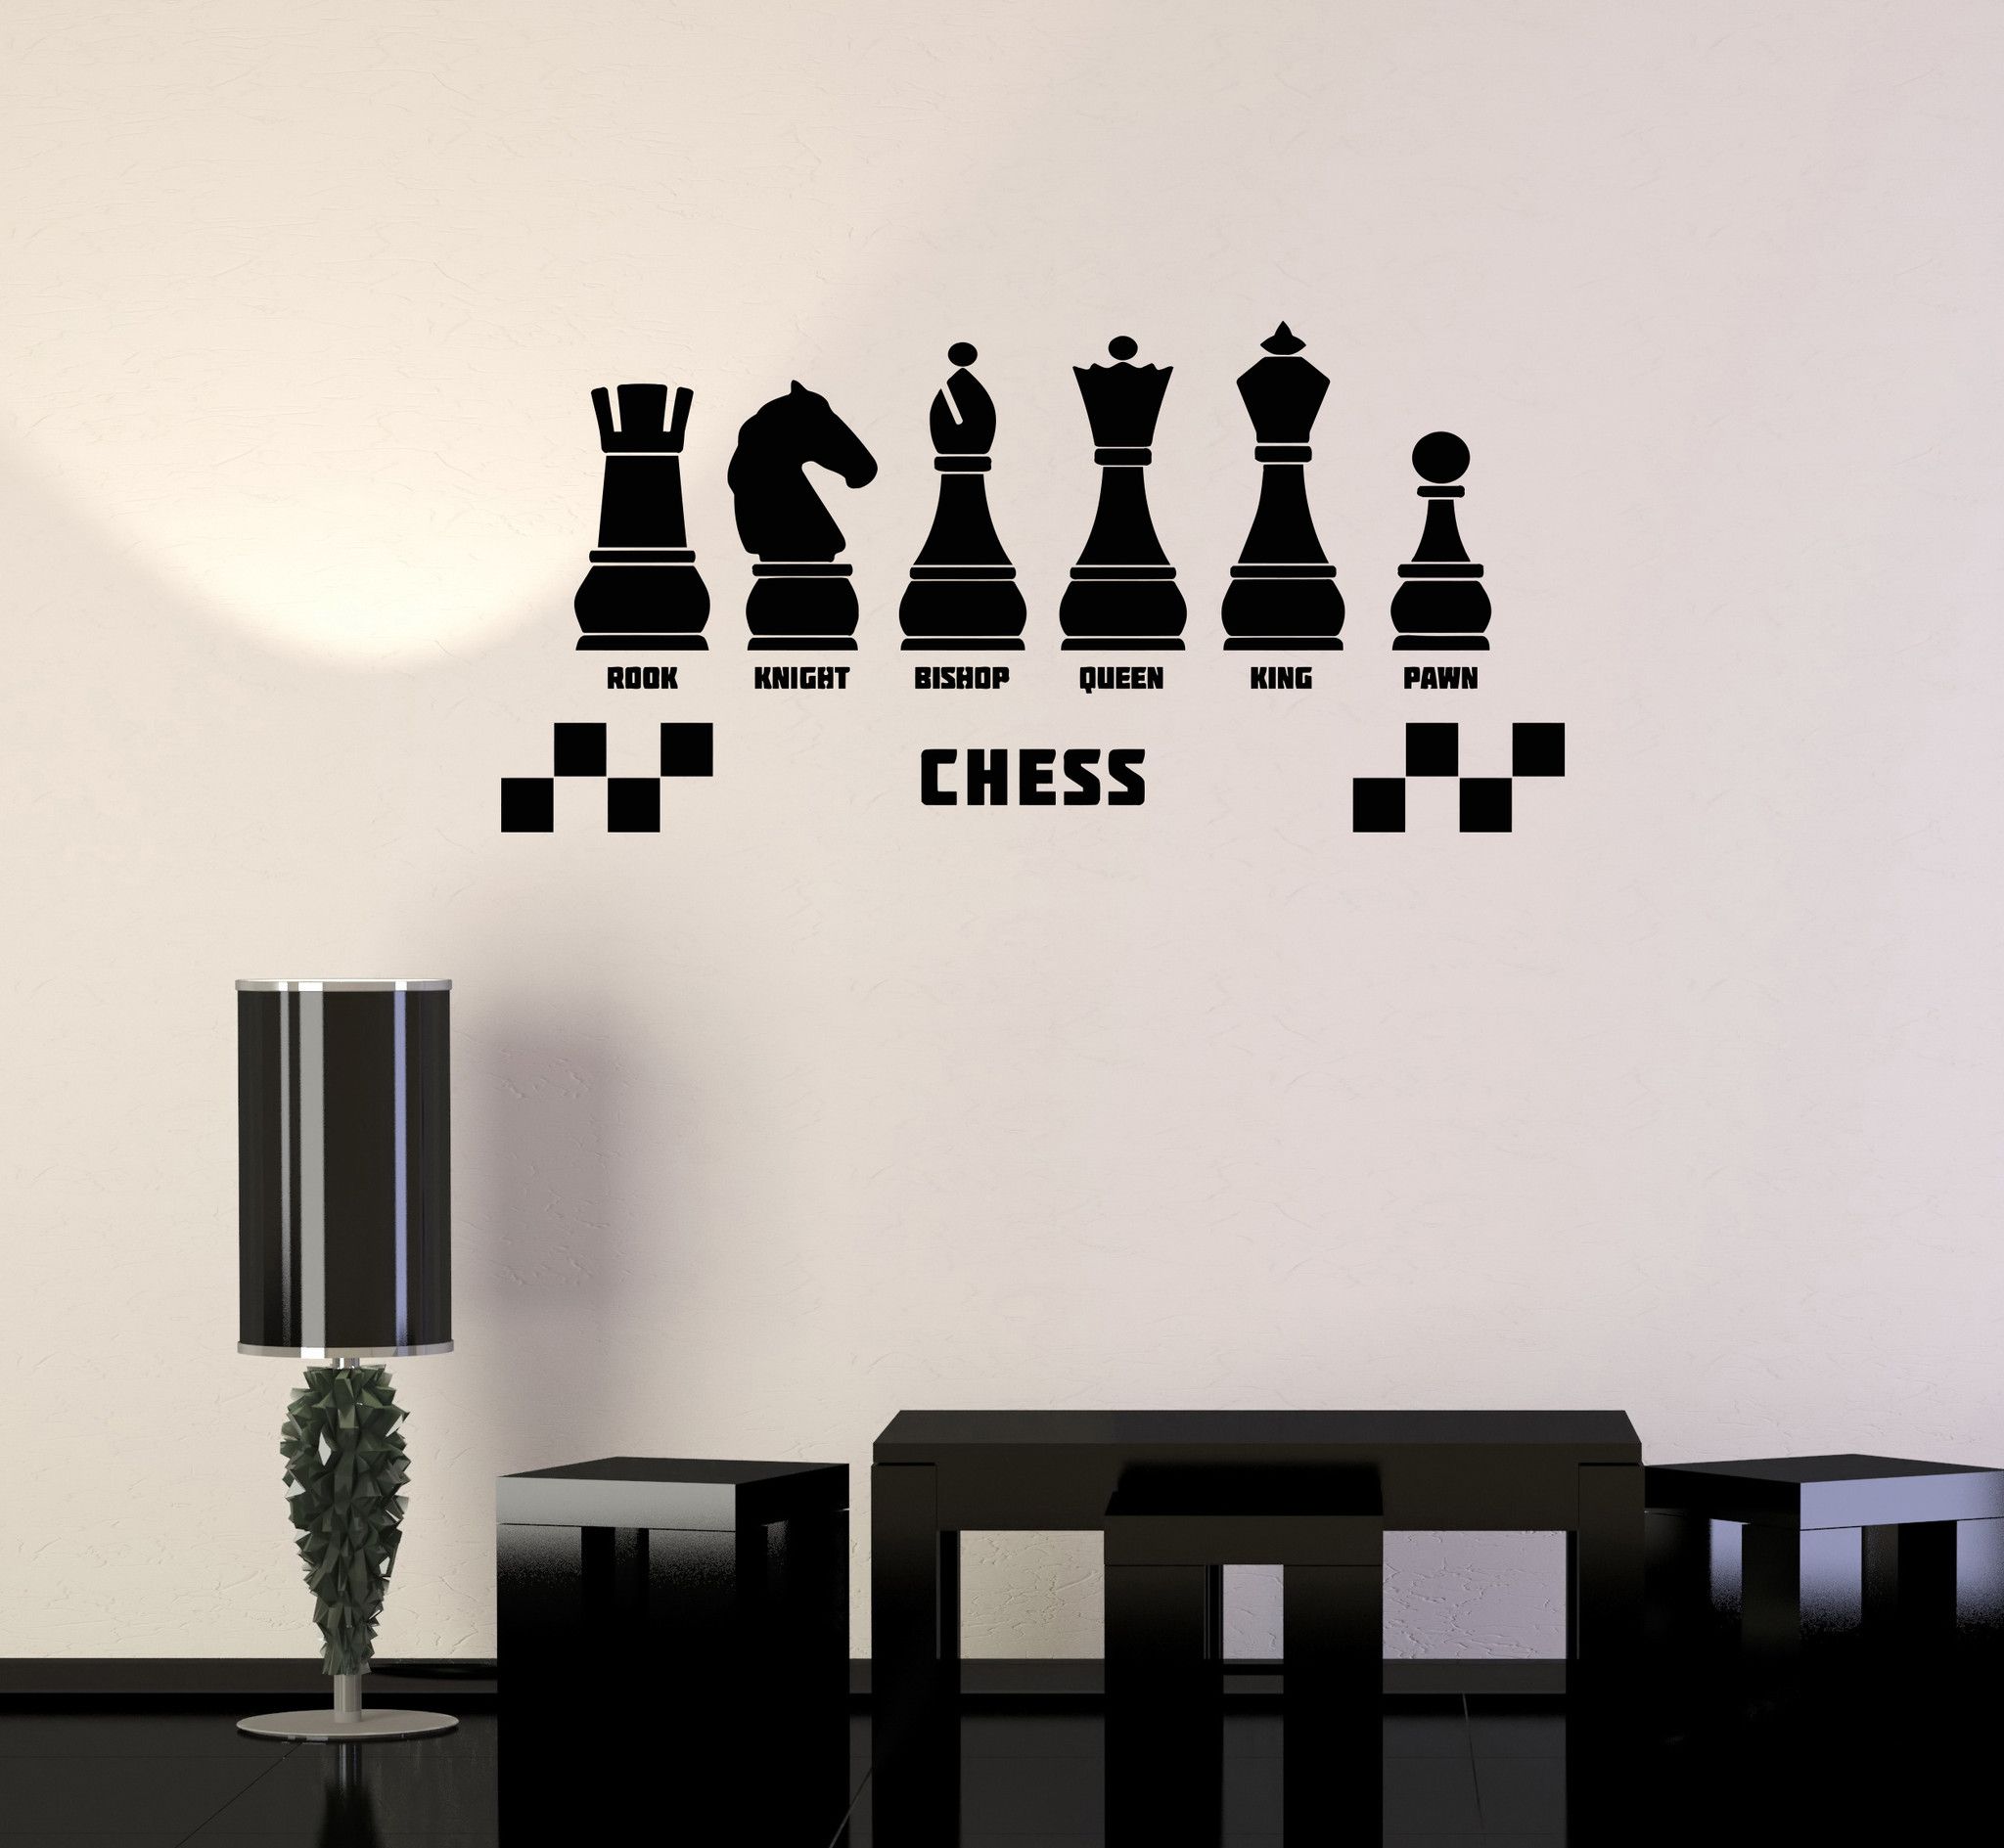 Креативное использование шахматной доски в интерьере